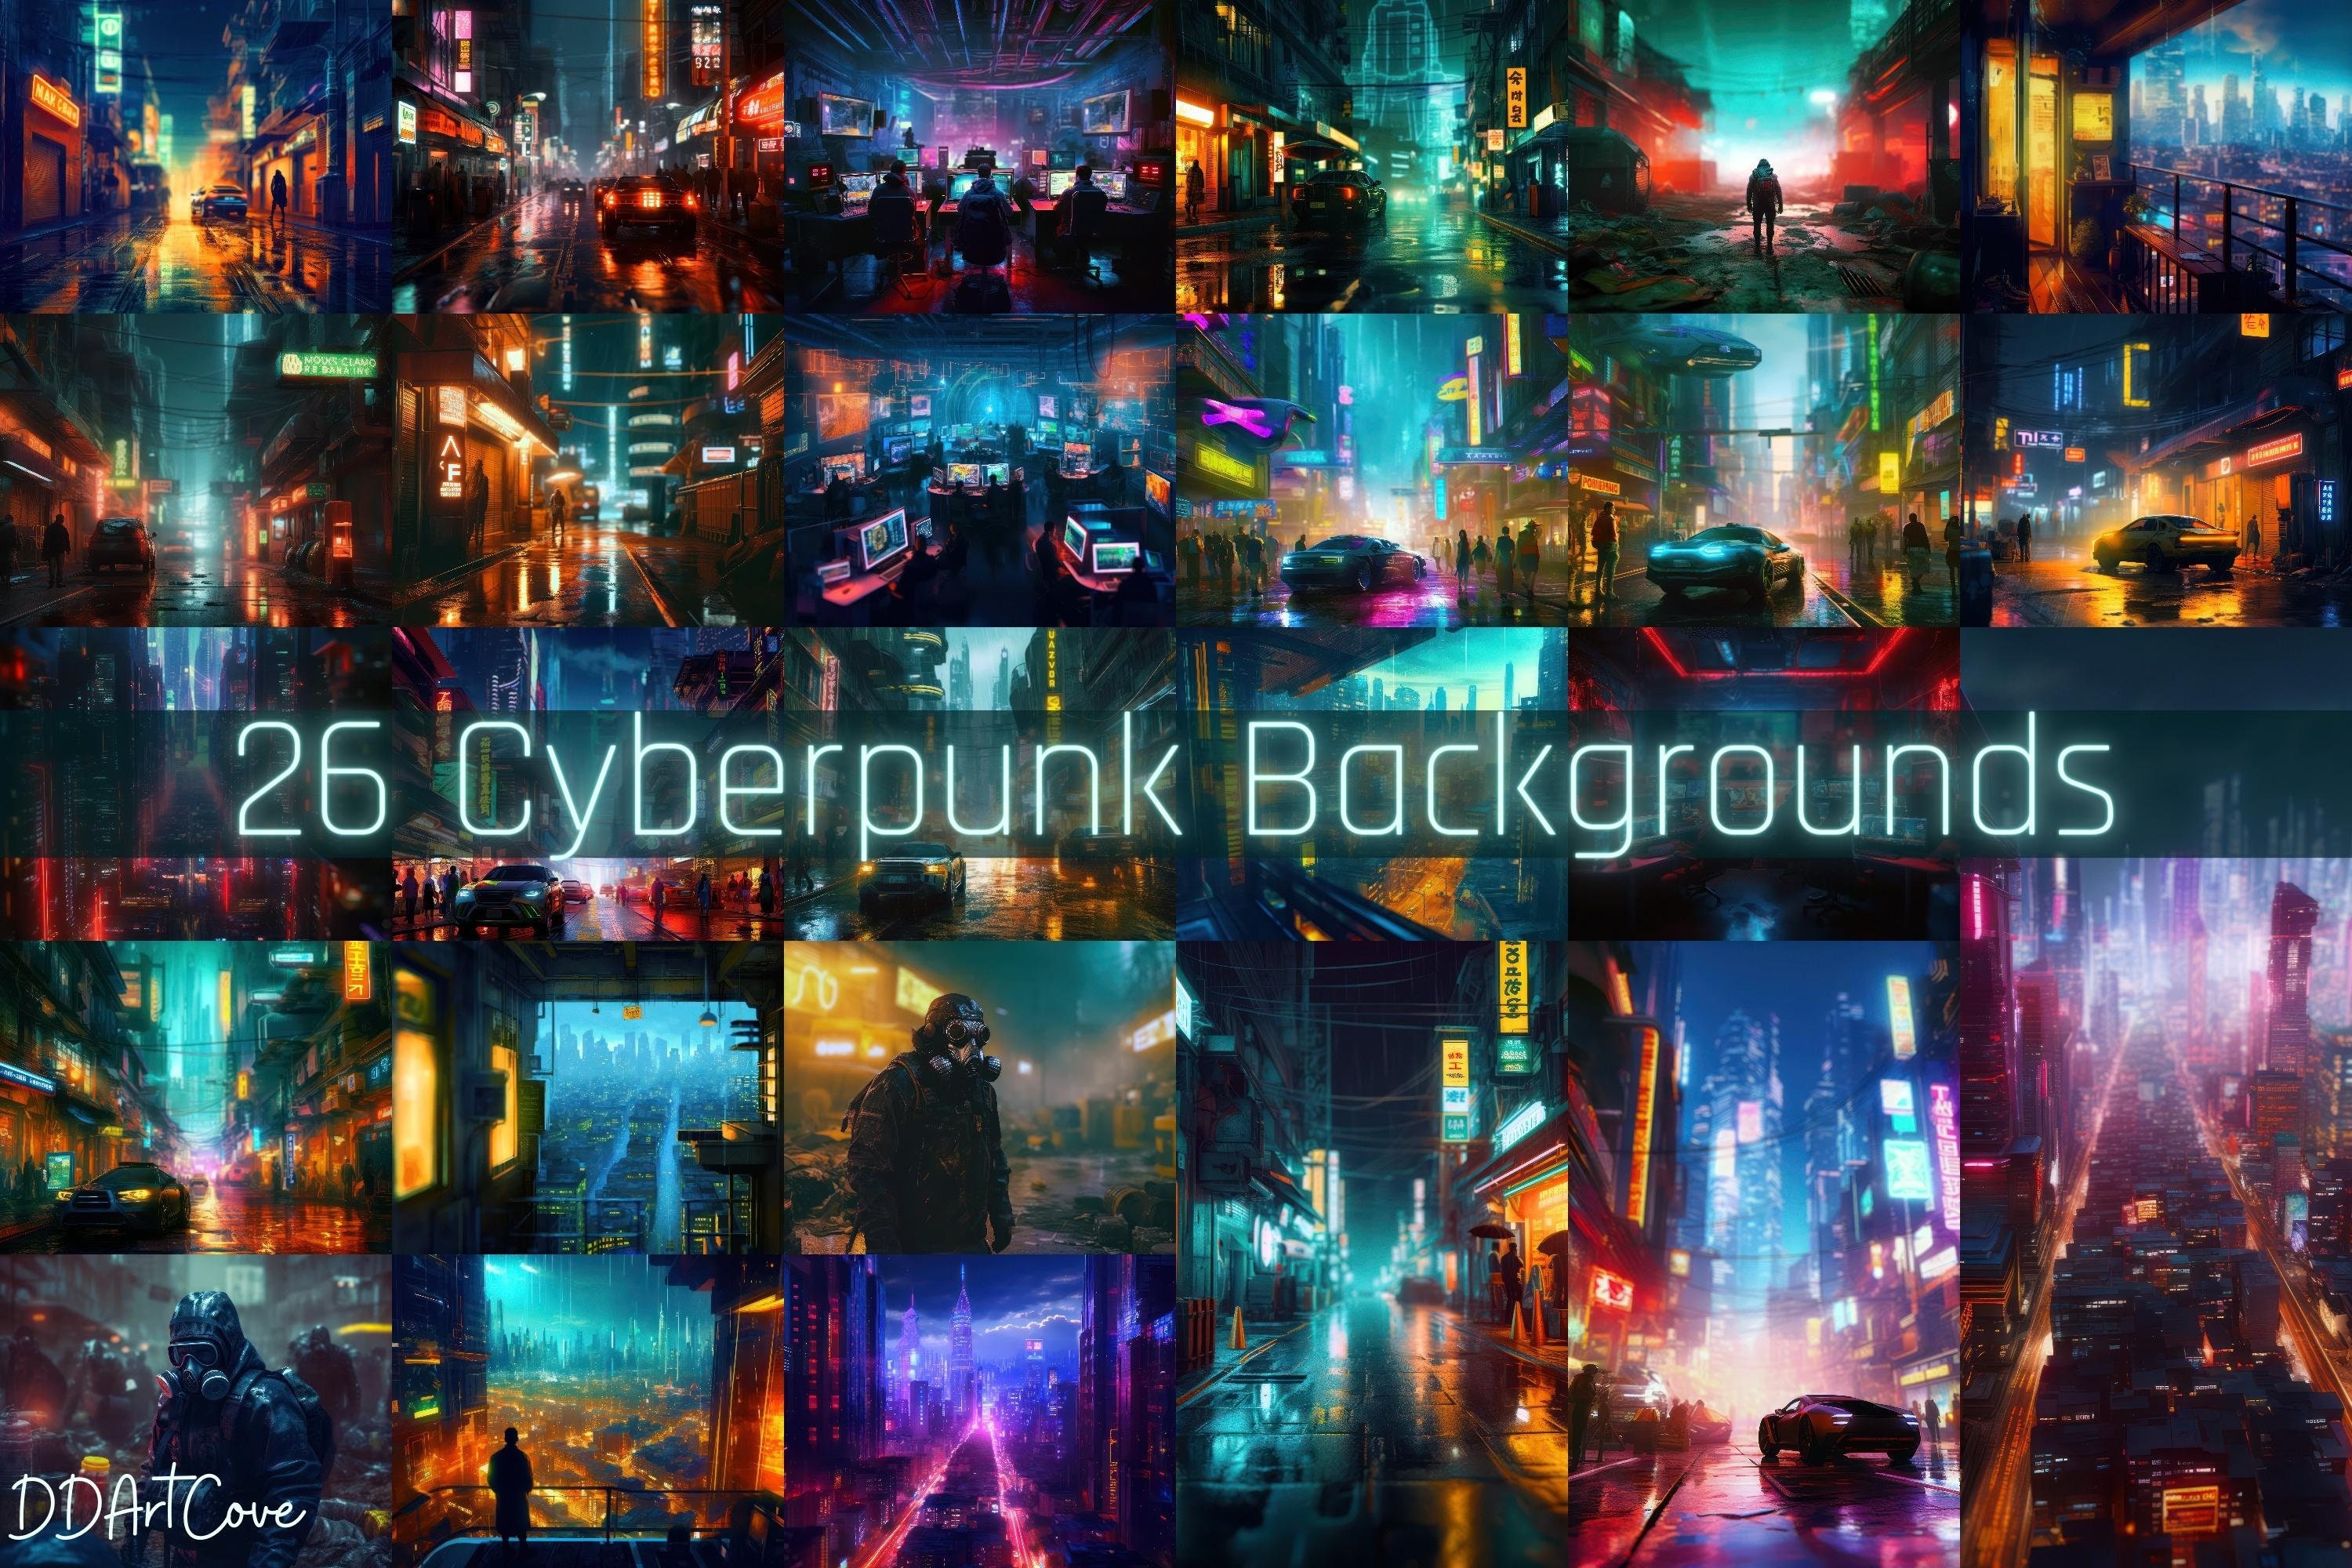 Cyberpunk theme wallpaper